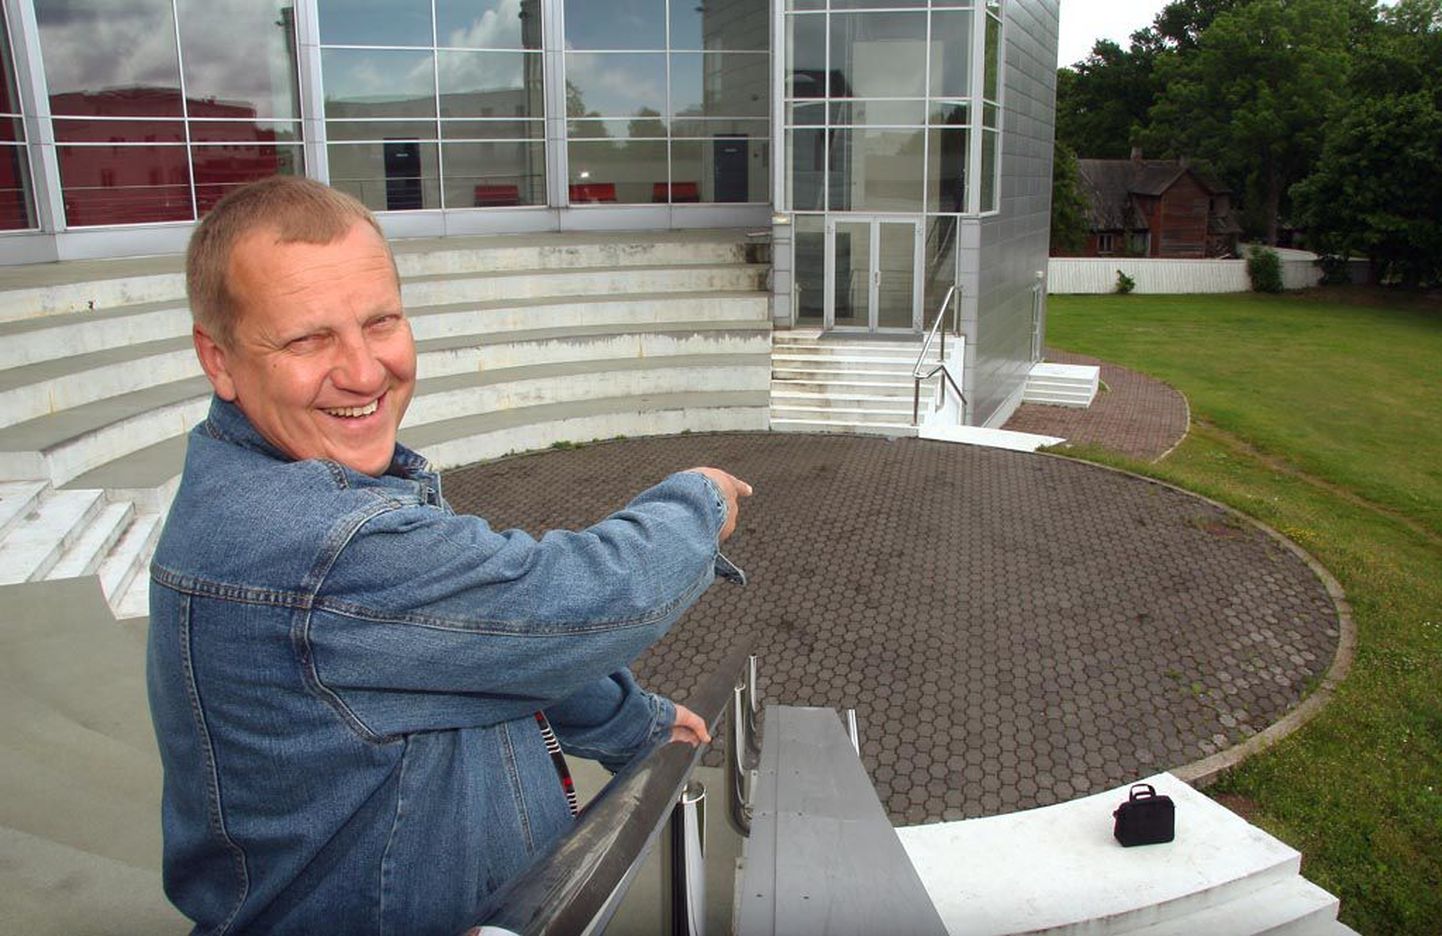 Tartu ülikooli Pärnu kolledži õuel asuv amfiteater on Toomas Volli meelest ehituslikult väga tänulik koht ühendkoori ja -orkestri paigutamiseks. "Täitsa huvitav vaadata, kuidas see kontsert õnnestub," ütles Voll.